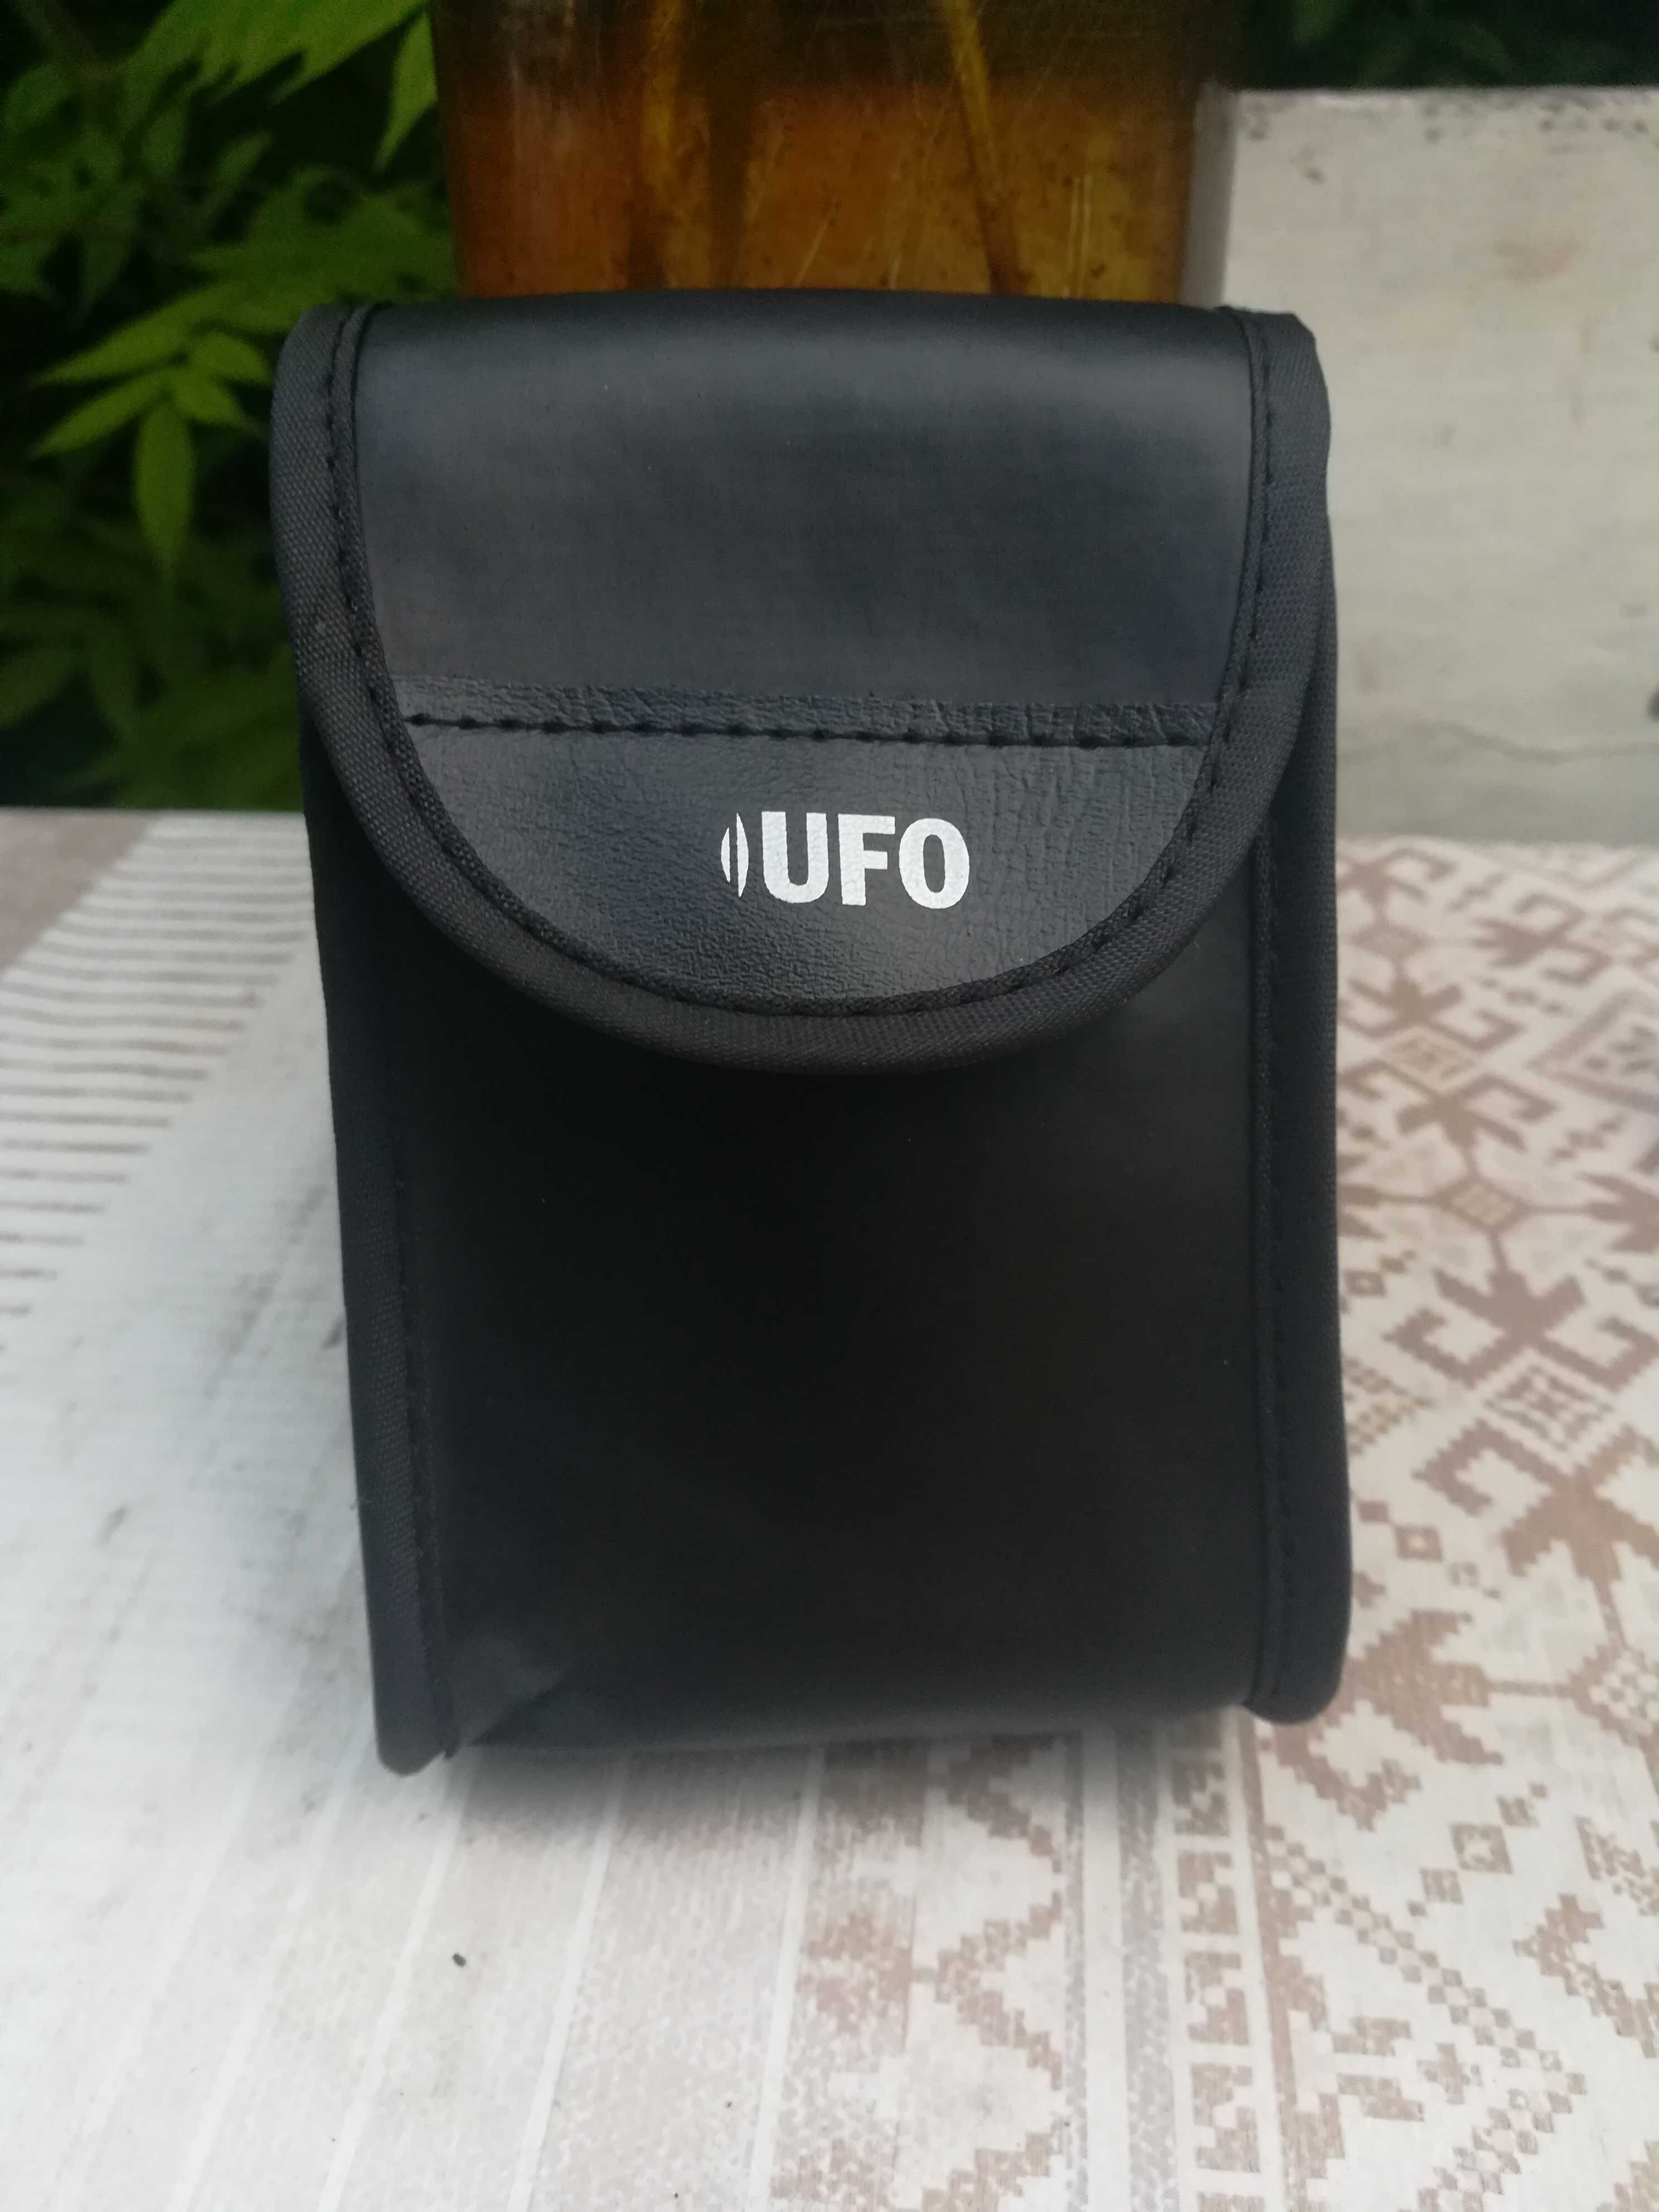 Продаю пленочный фотоаппарат " UFO ES 210 "